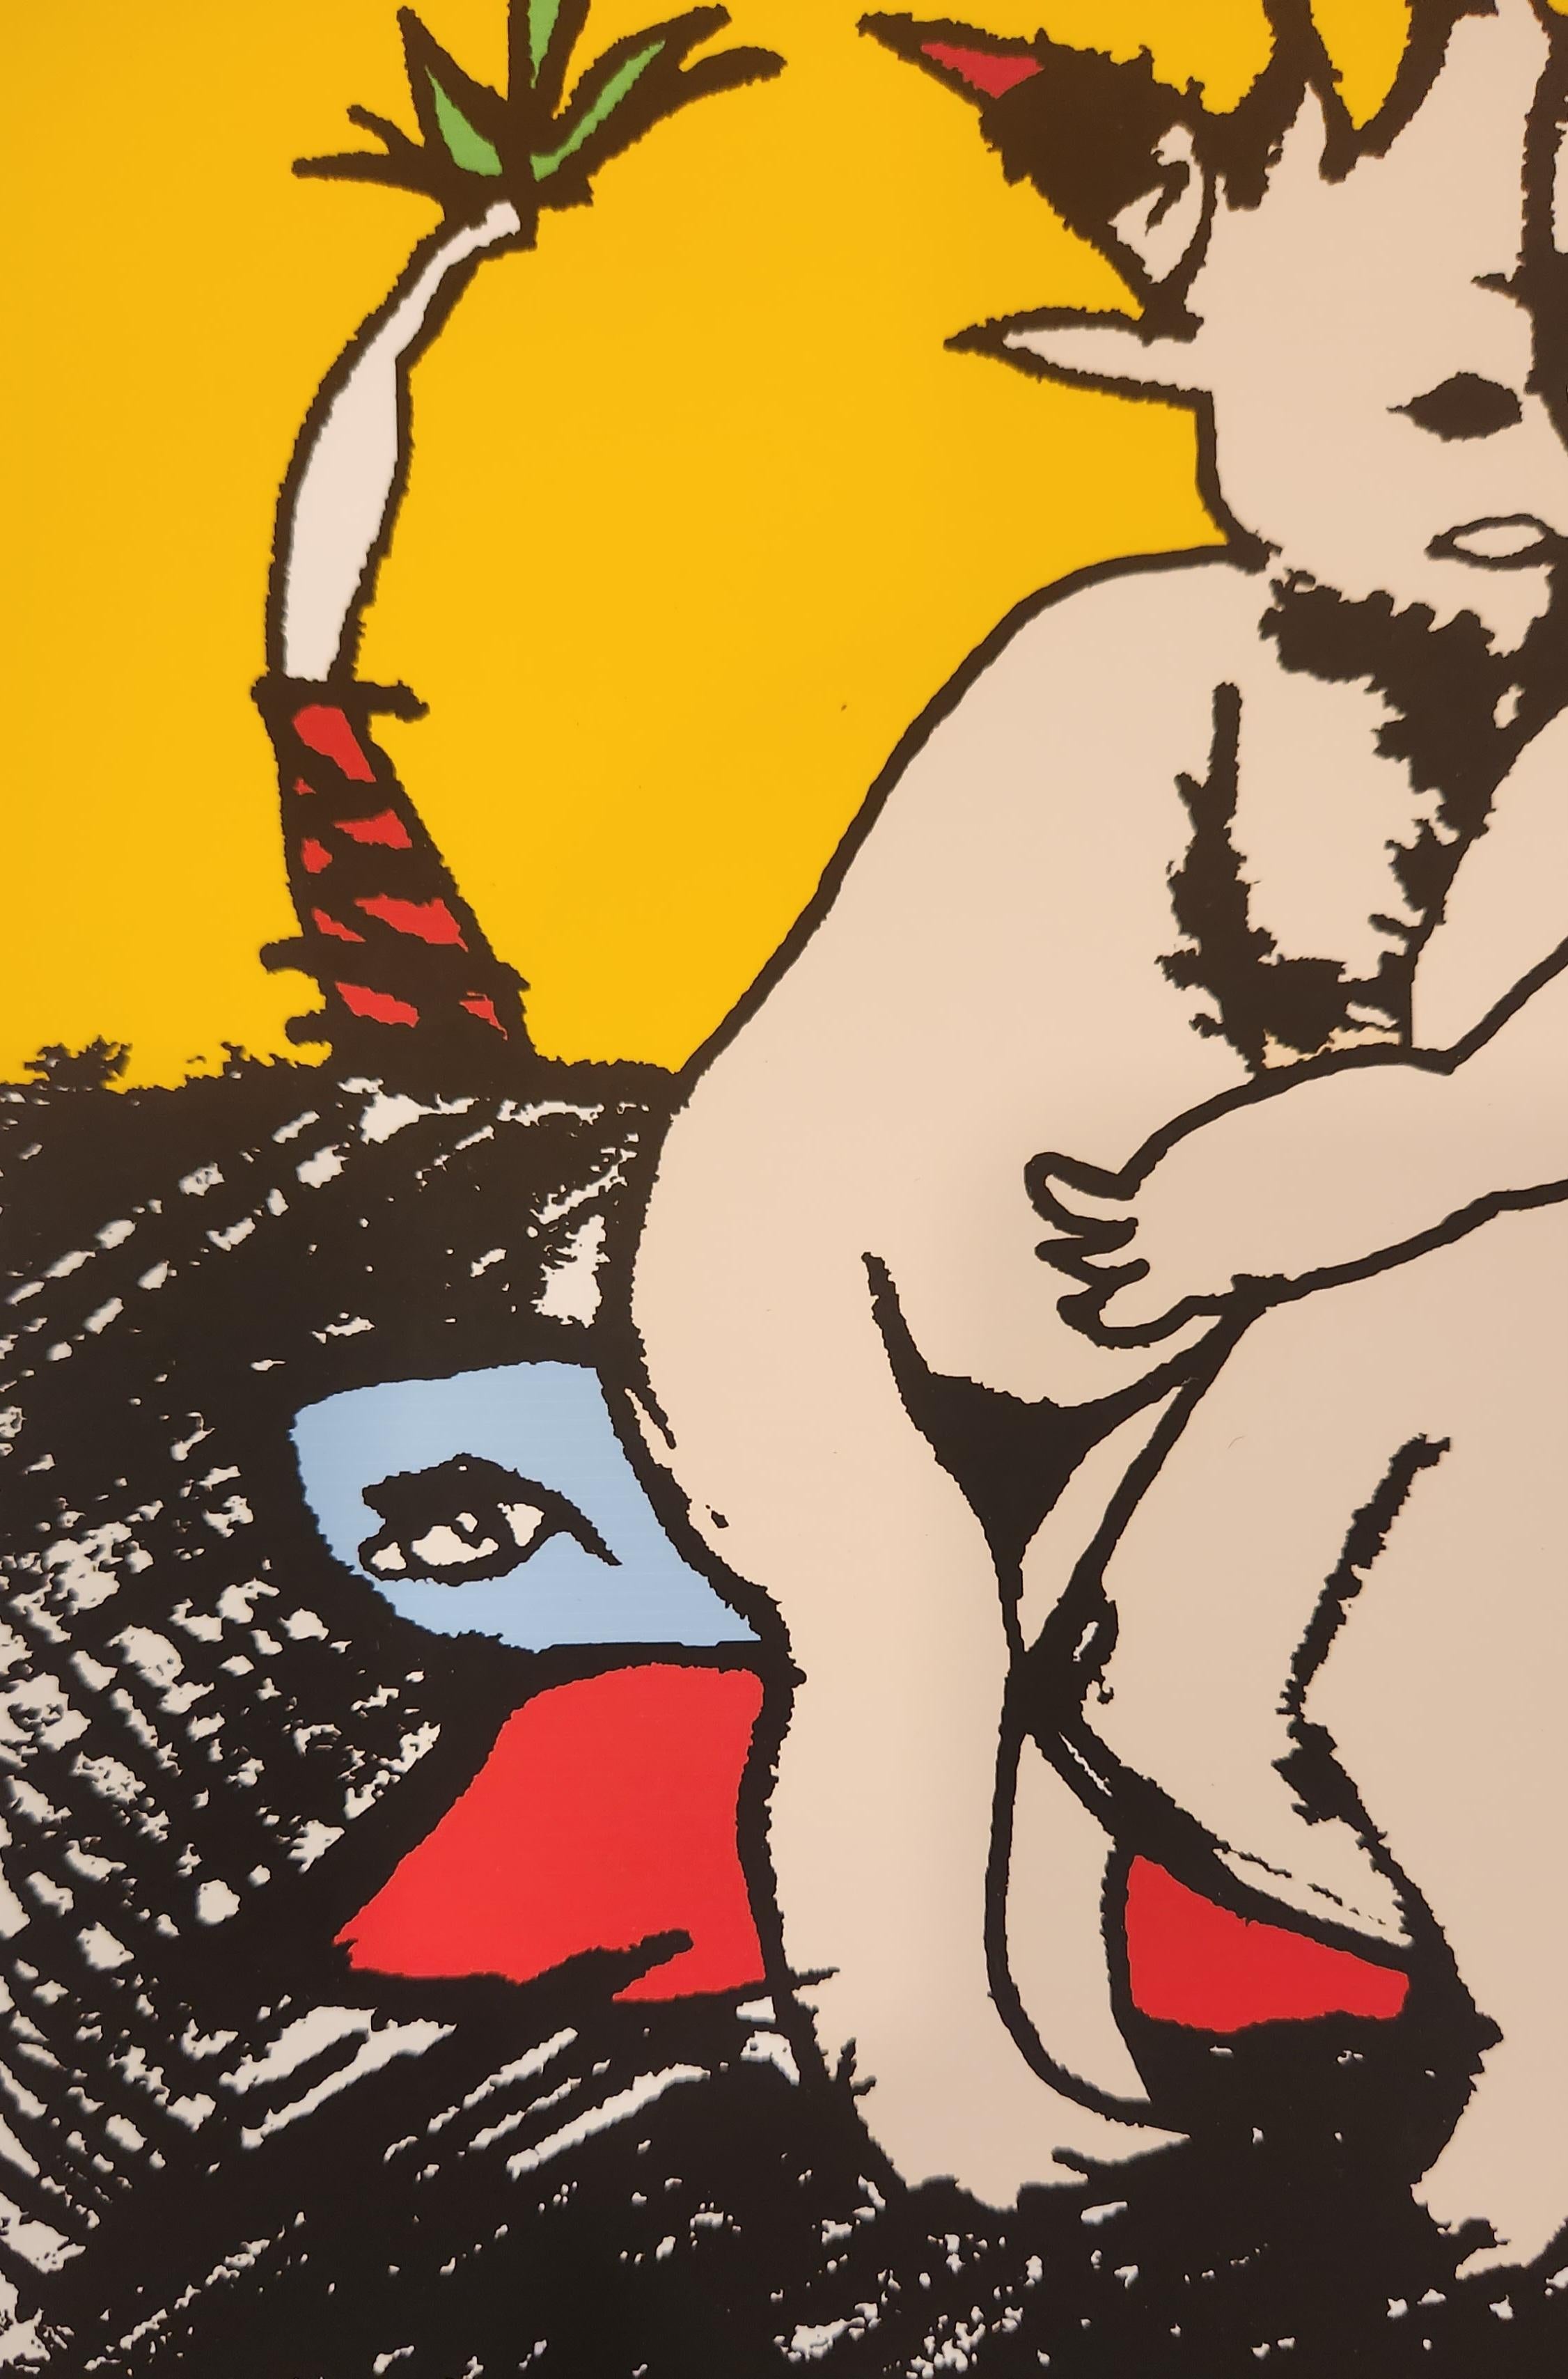 Cette estampe représente deux figures animales à cornes s'enlaçant l'une l'autre. Les deux personnages blancs sont assis ensemble sur un siège bleu et rouge vif qui contraste avec le sol à motifs. Les marques excitantes utilisées pour créer le sol